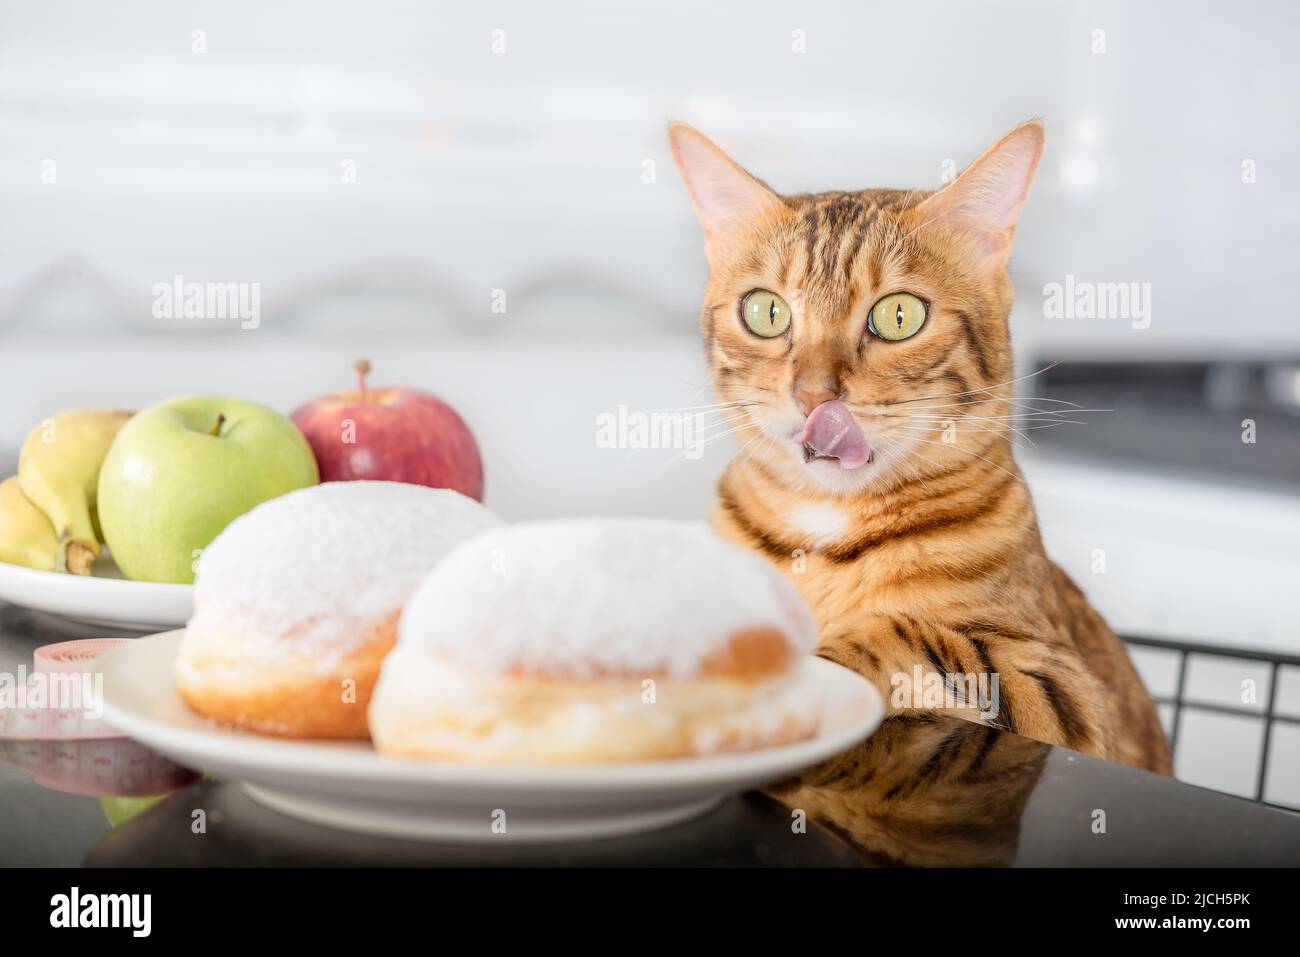 Die Katze leckt sich die Lippen, während sie auf die Donuts schaut. Die Wahl zwischen ungesunden und gesunden Lebensmitteln. Stockfoto